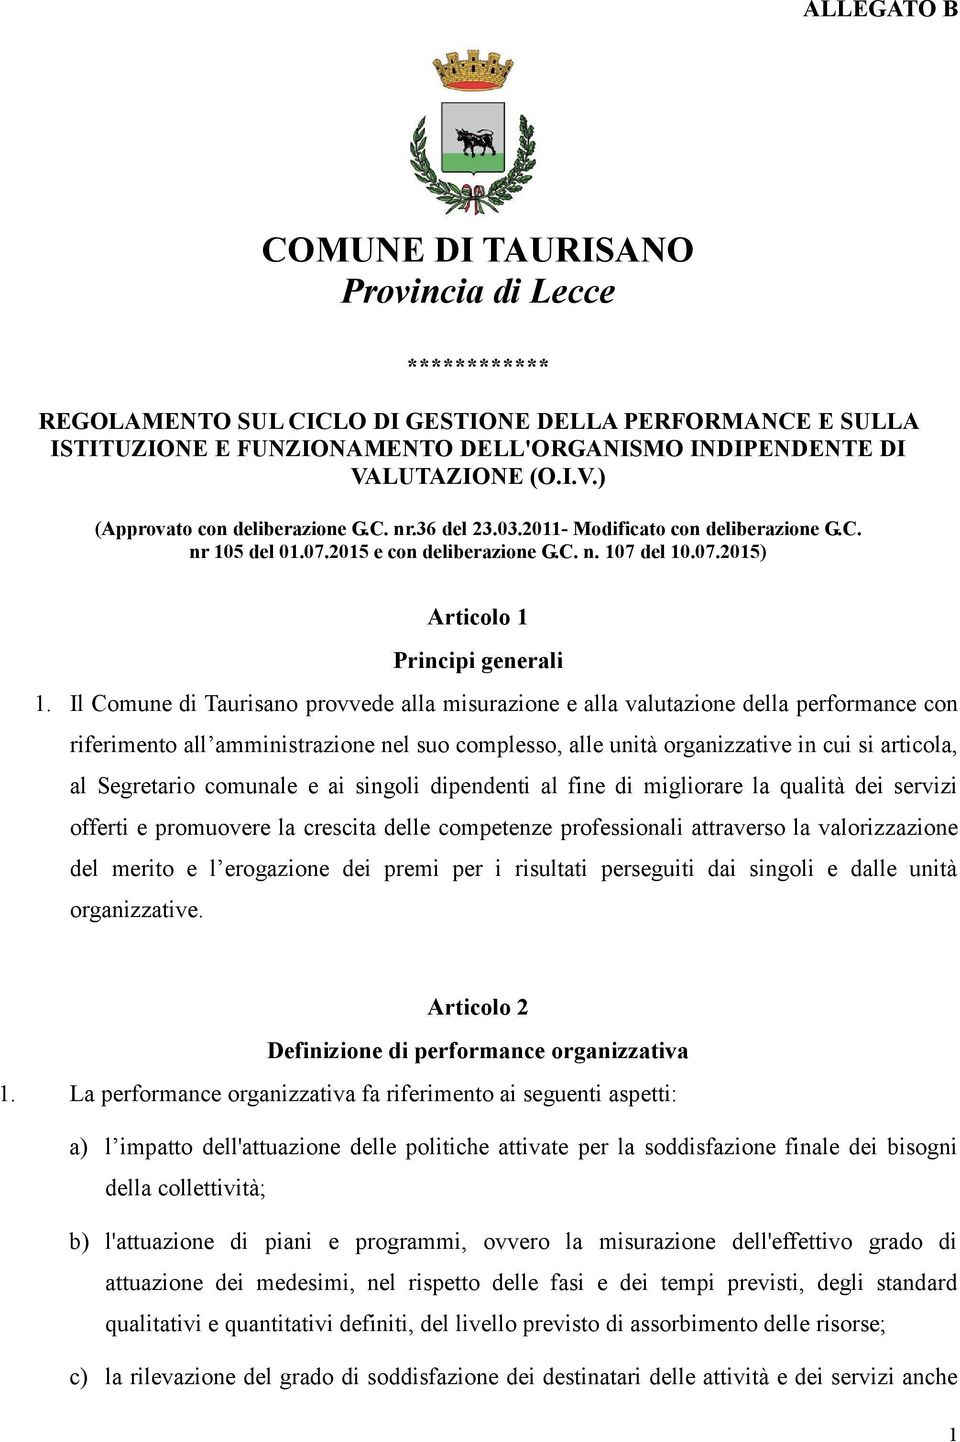 Il Comune di Taurisano provvede alla misurazione e alla valutazione della performance con riferimento all amministrazione nel suo complesso, alle unità organizzative in cui si articola, al Segretario